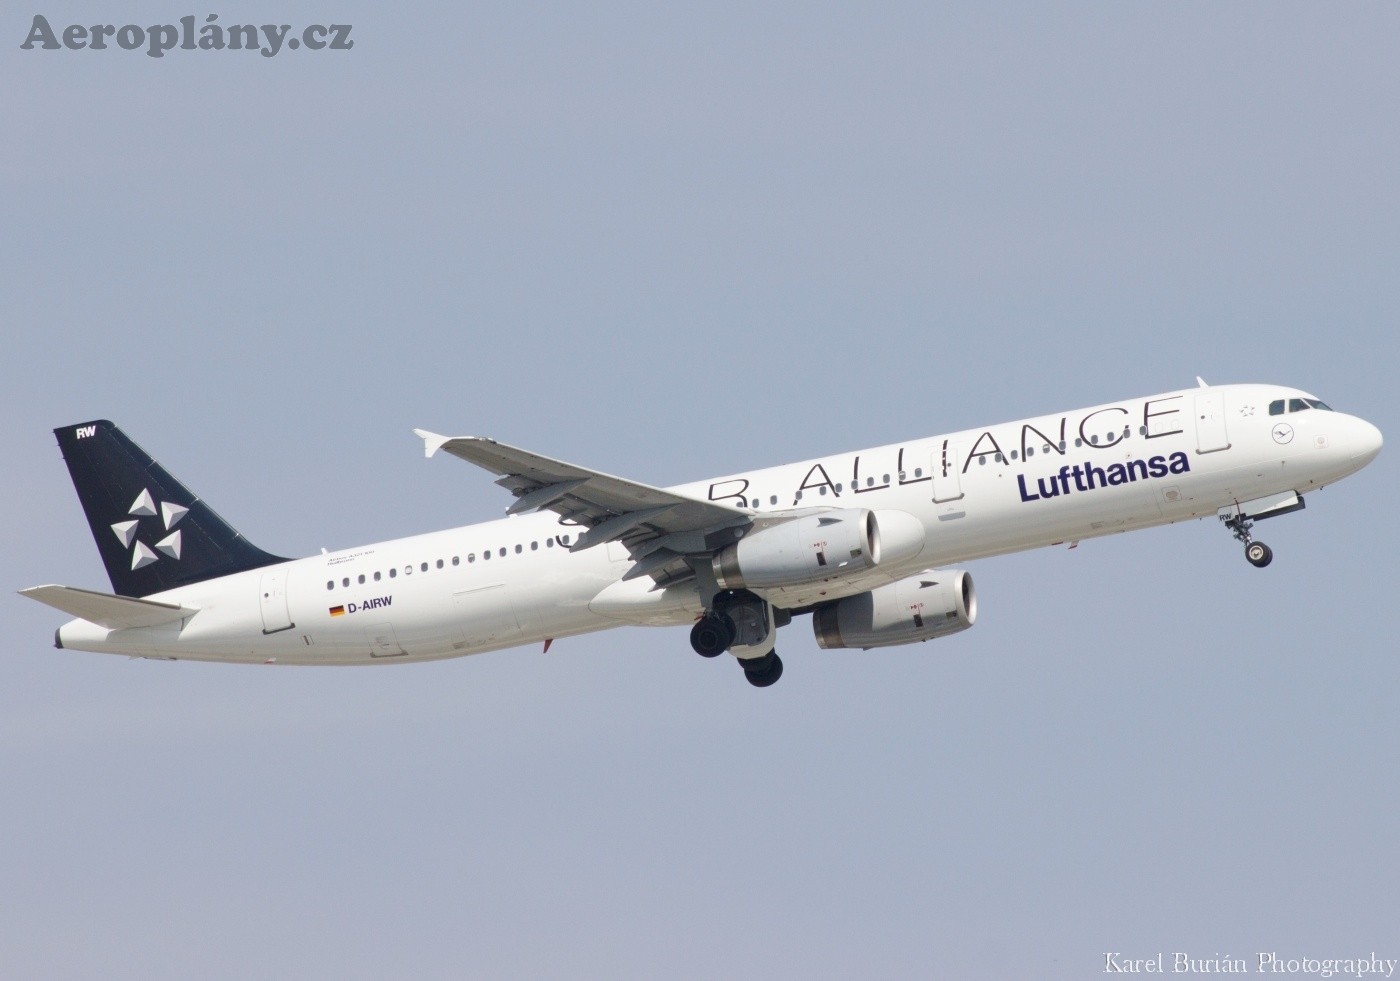 Airbus A321-131, D-AIRW, Lufthansa